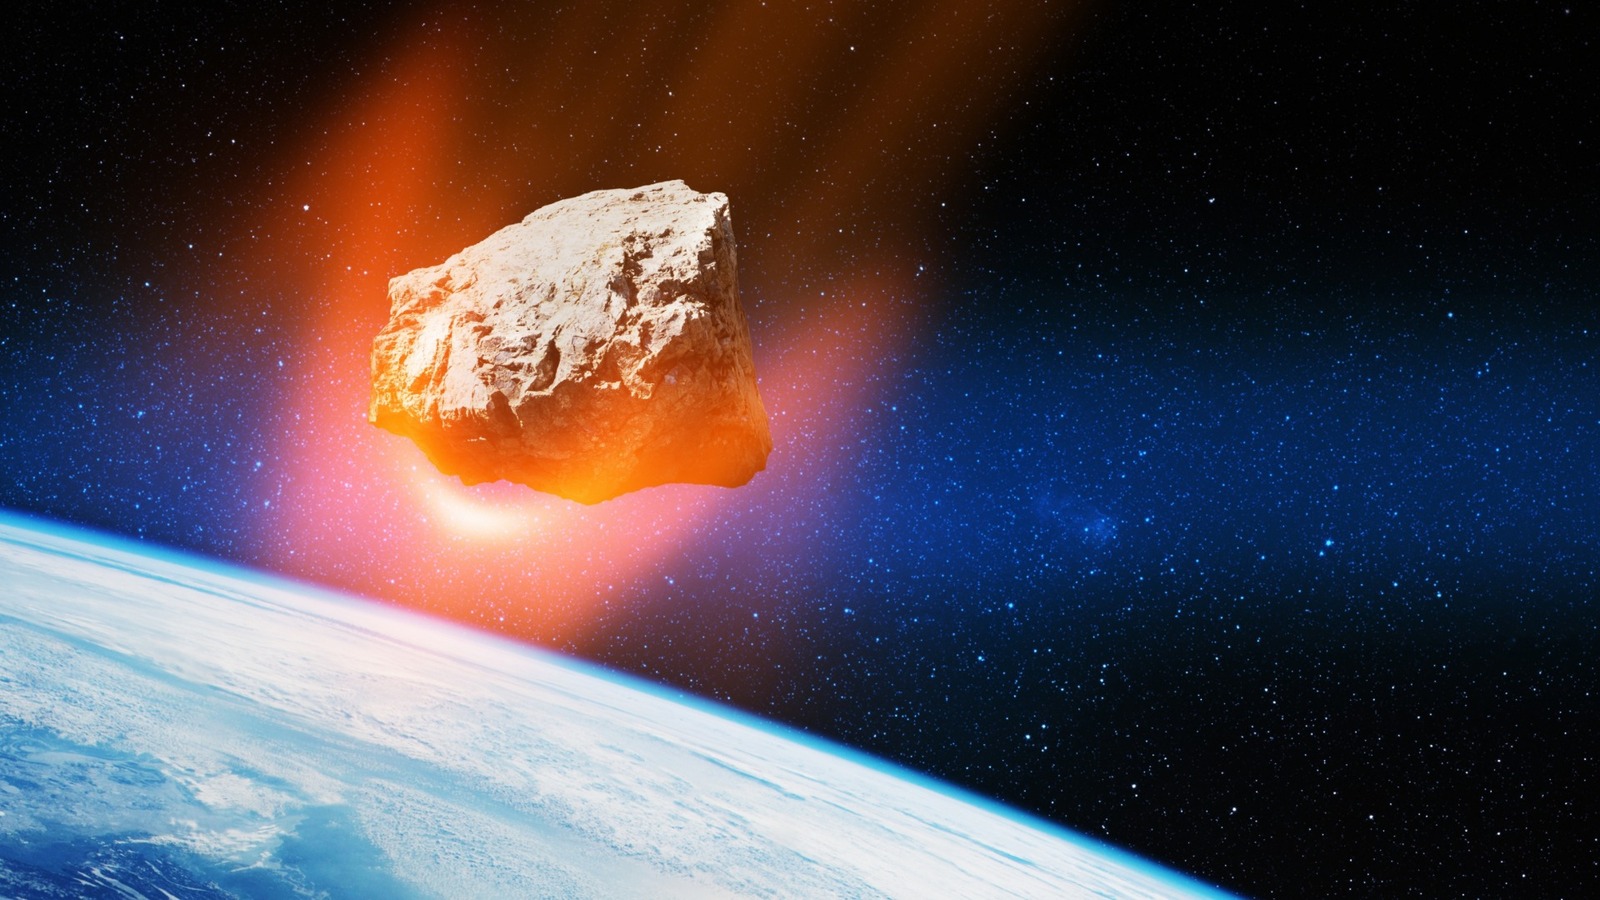 زمین چقدر برای برخورد سیارک آماده است؟  در اینجا چیزی است که ما می دانیم